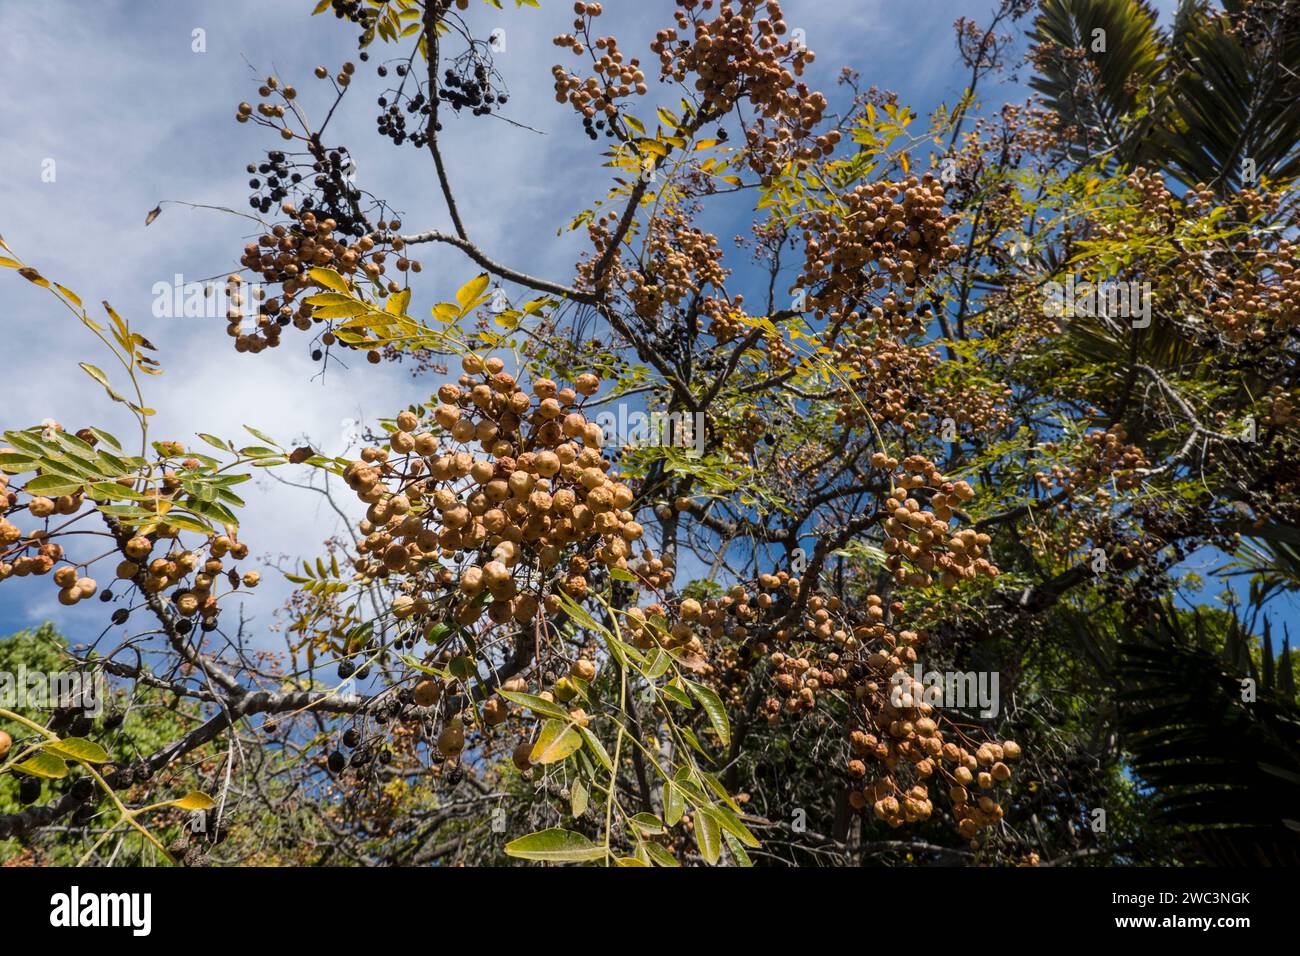 Zedrachbaum oder Indischer Zederachbaum (Melia azedarach), auch Persischer Flieder, Westindischer Flieder, Chinesischer Holunder, Maspalomas, gran CAN Foto Stock